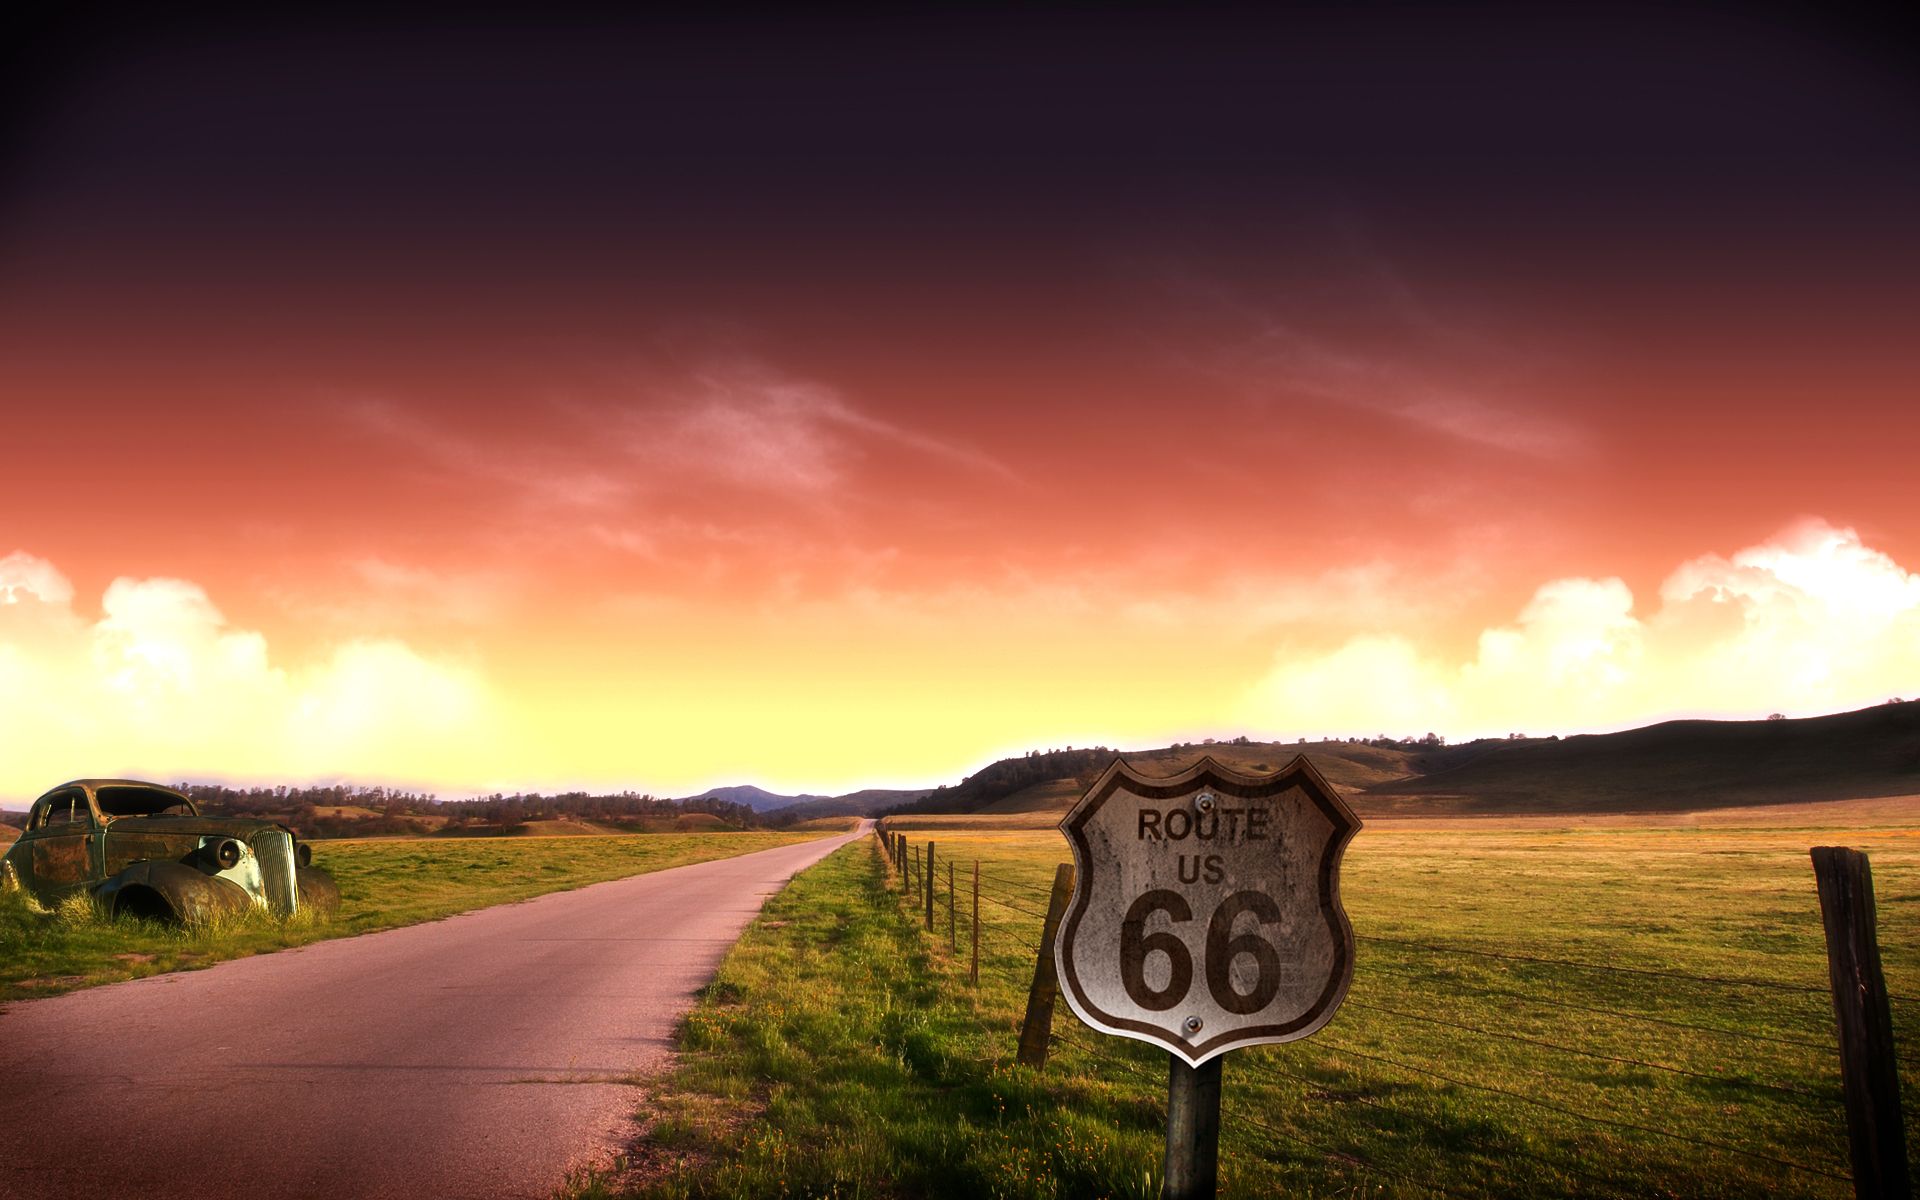 ルート66の壁紙,空,雲,自然の風景,道路,雰囲気